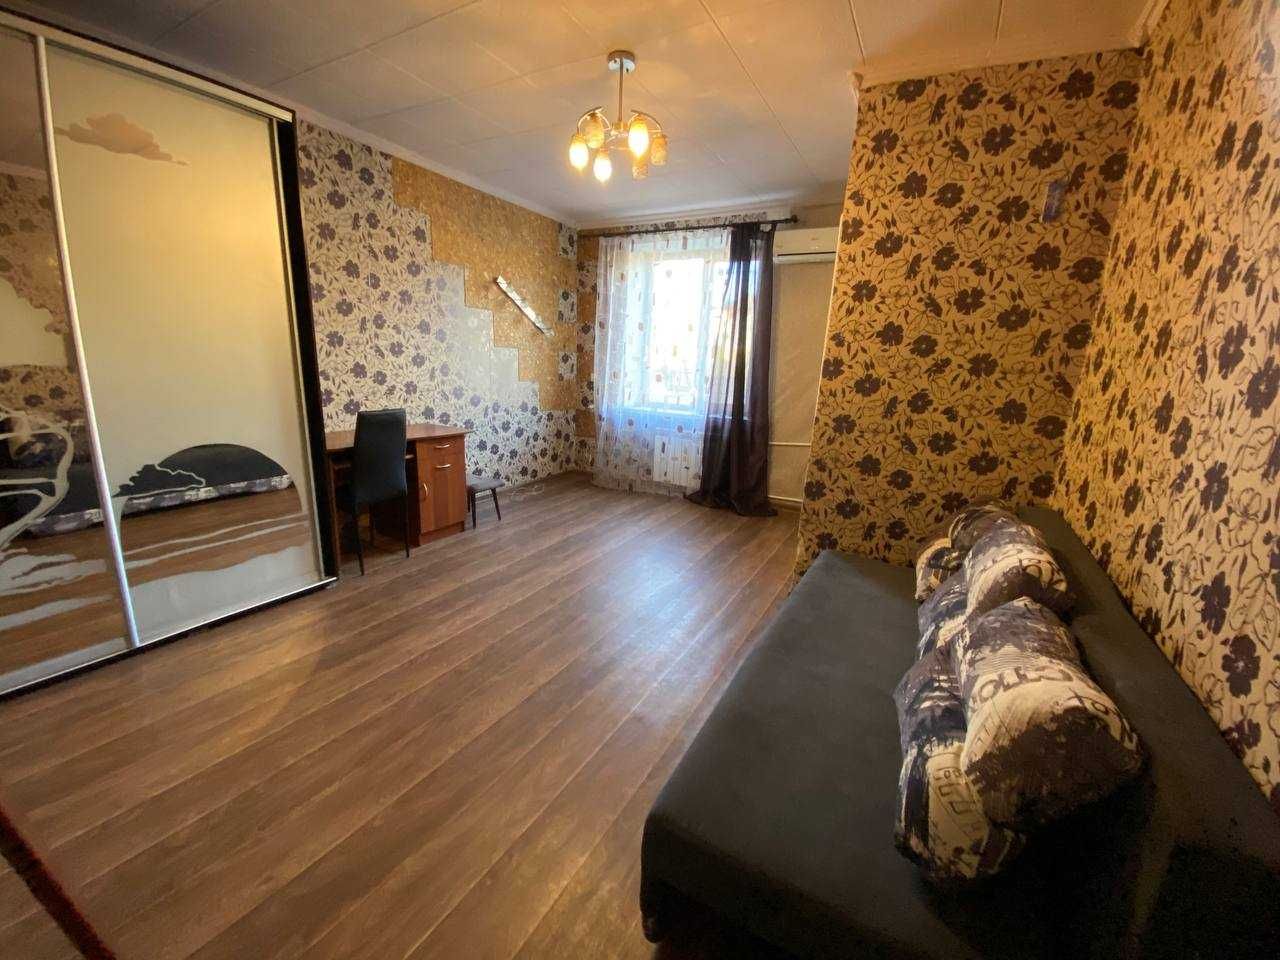 Продам 1к квартиру район Титова ул.Суворова (Шепарда) с мебелью ремонт